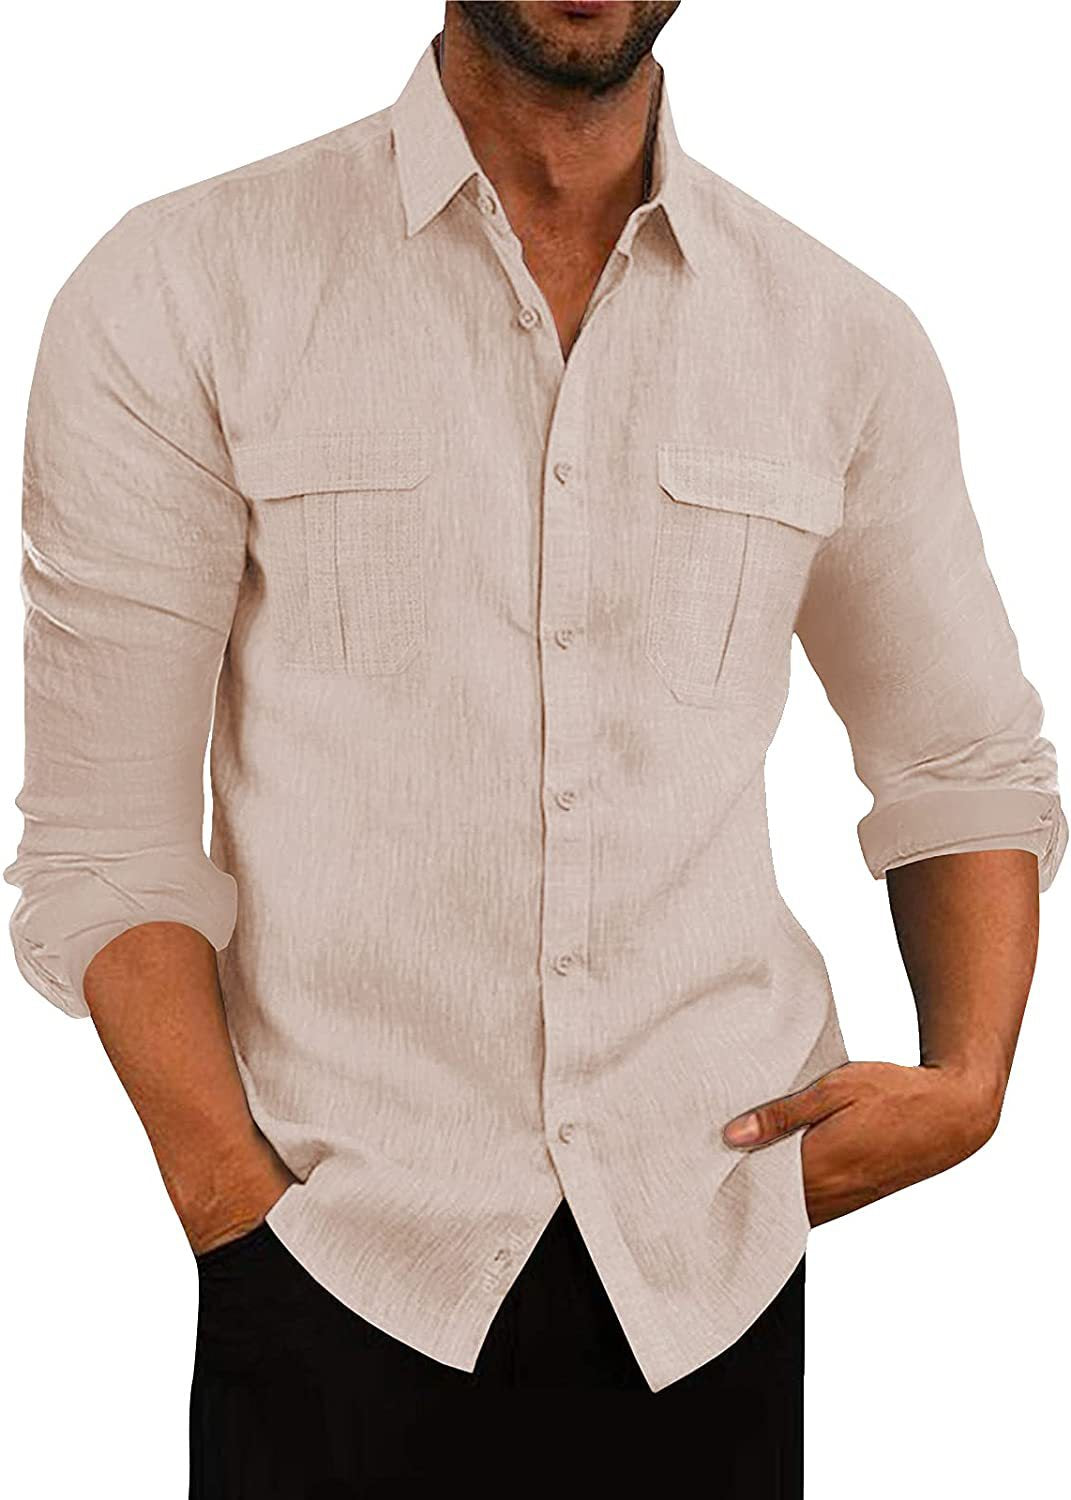 Men's Shirt Double Pocket Cotton Linen